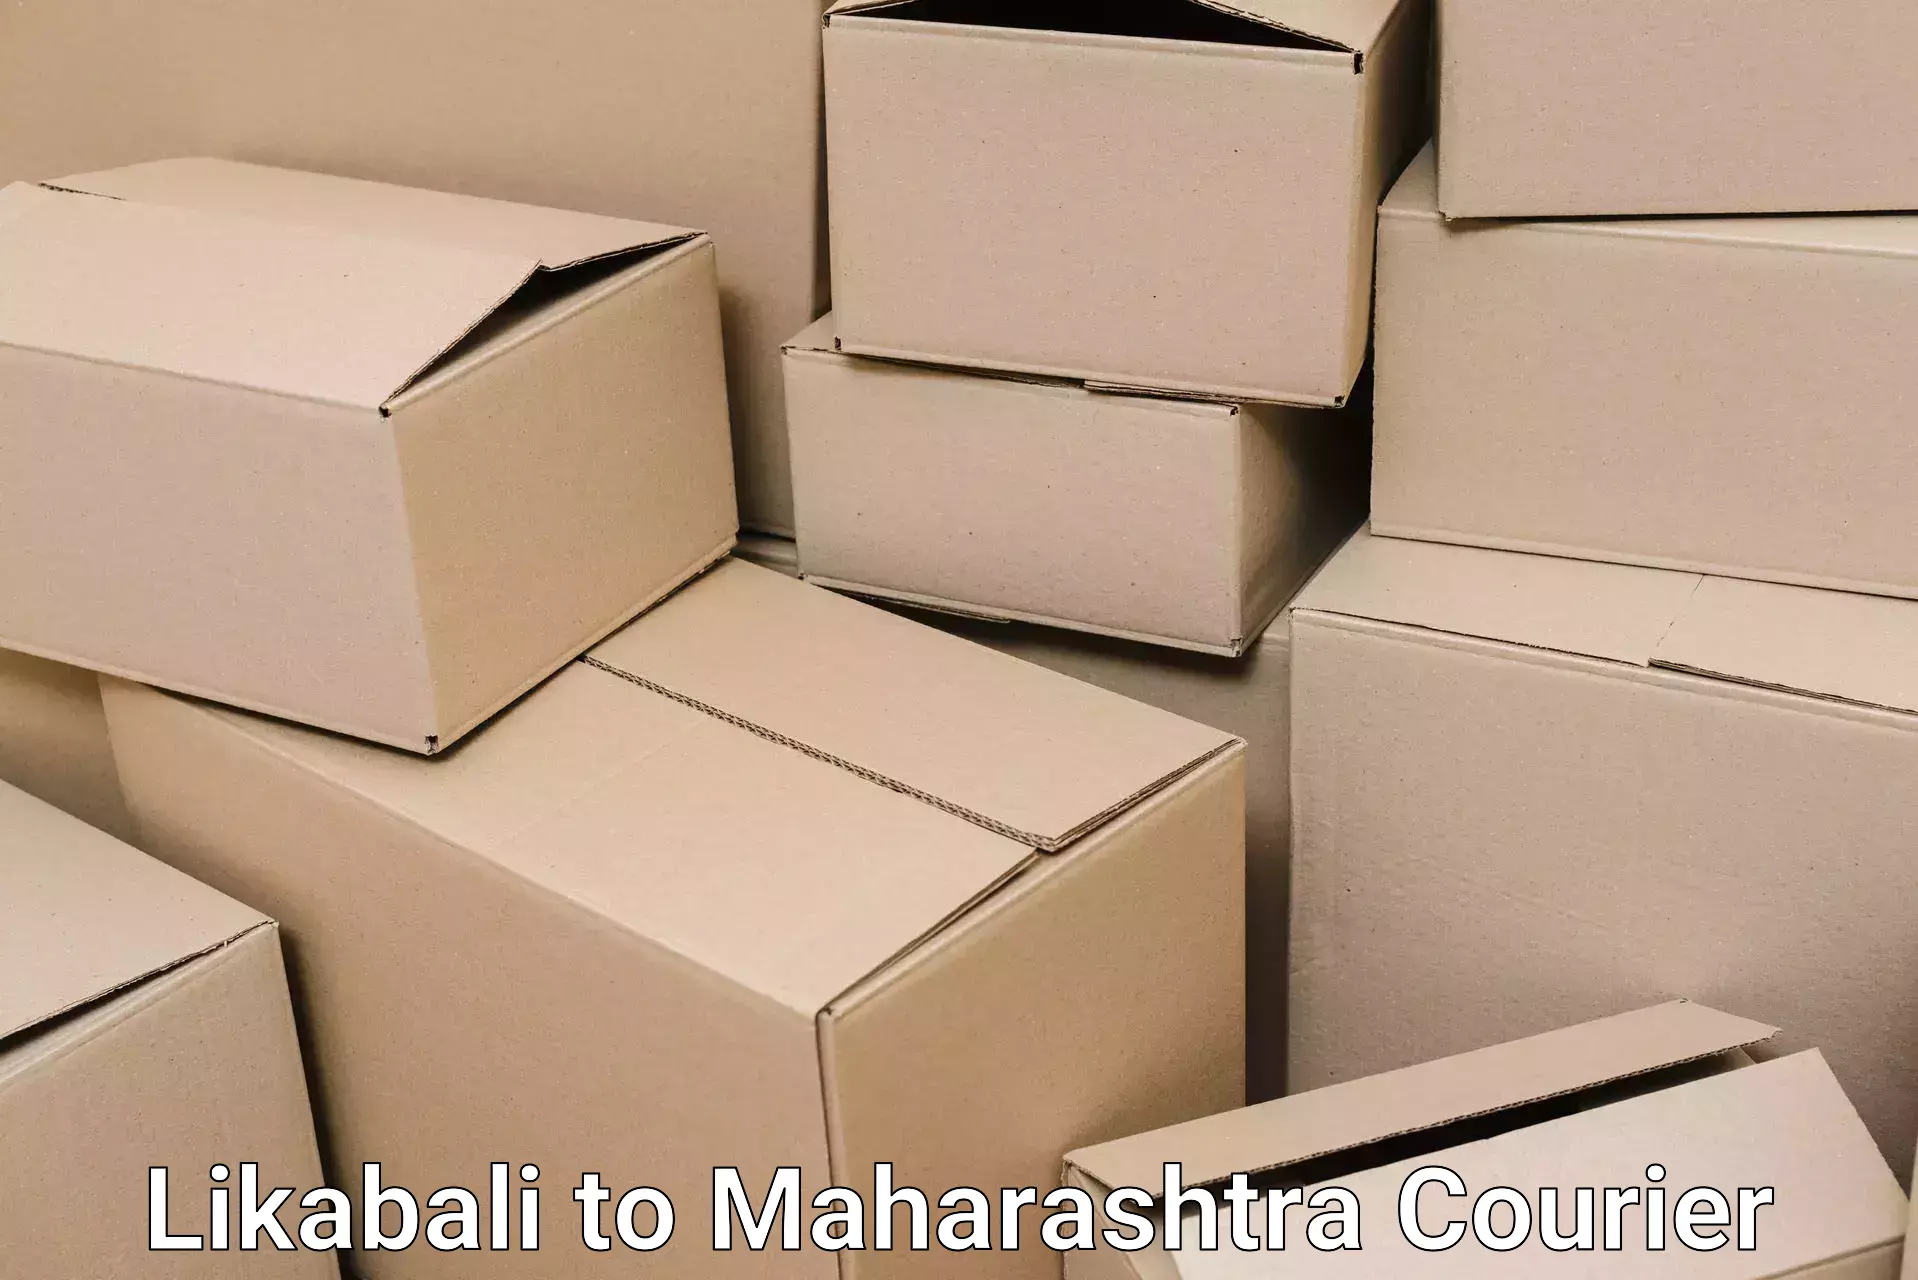 Furniture moving service Likabali to IIT Mumbai